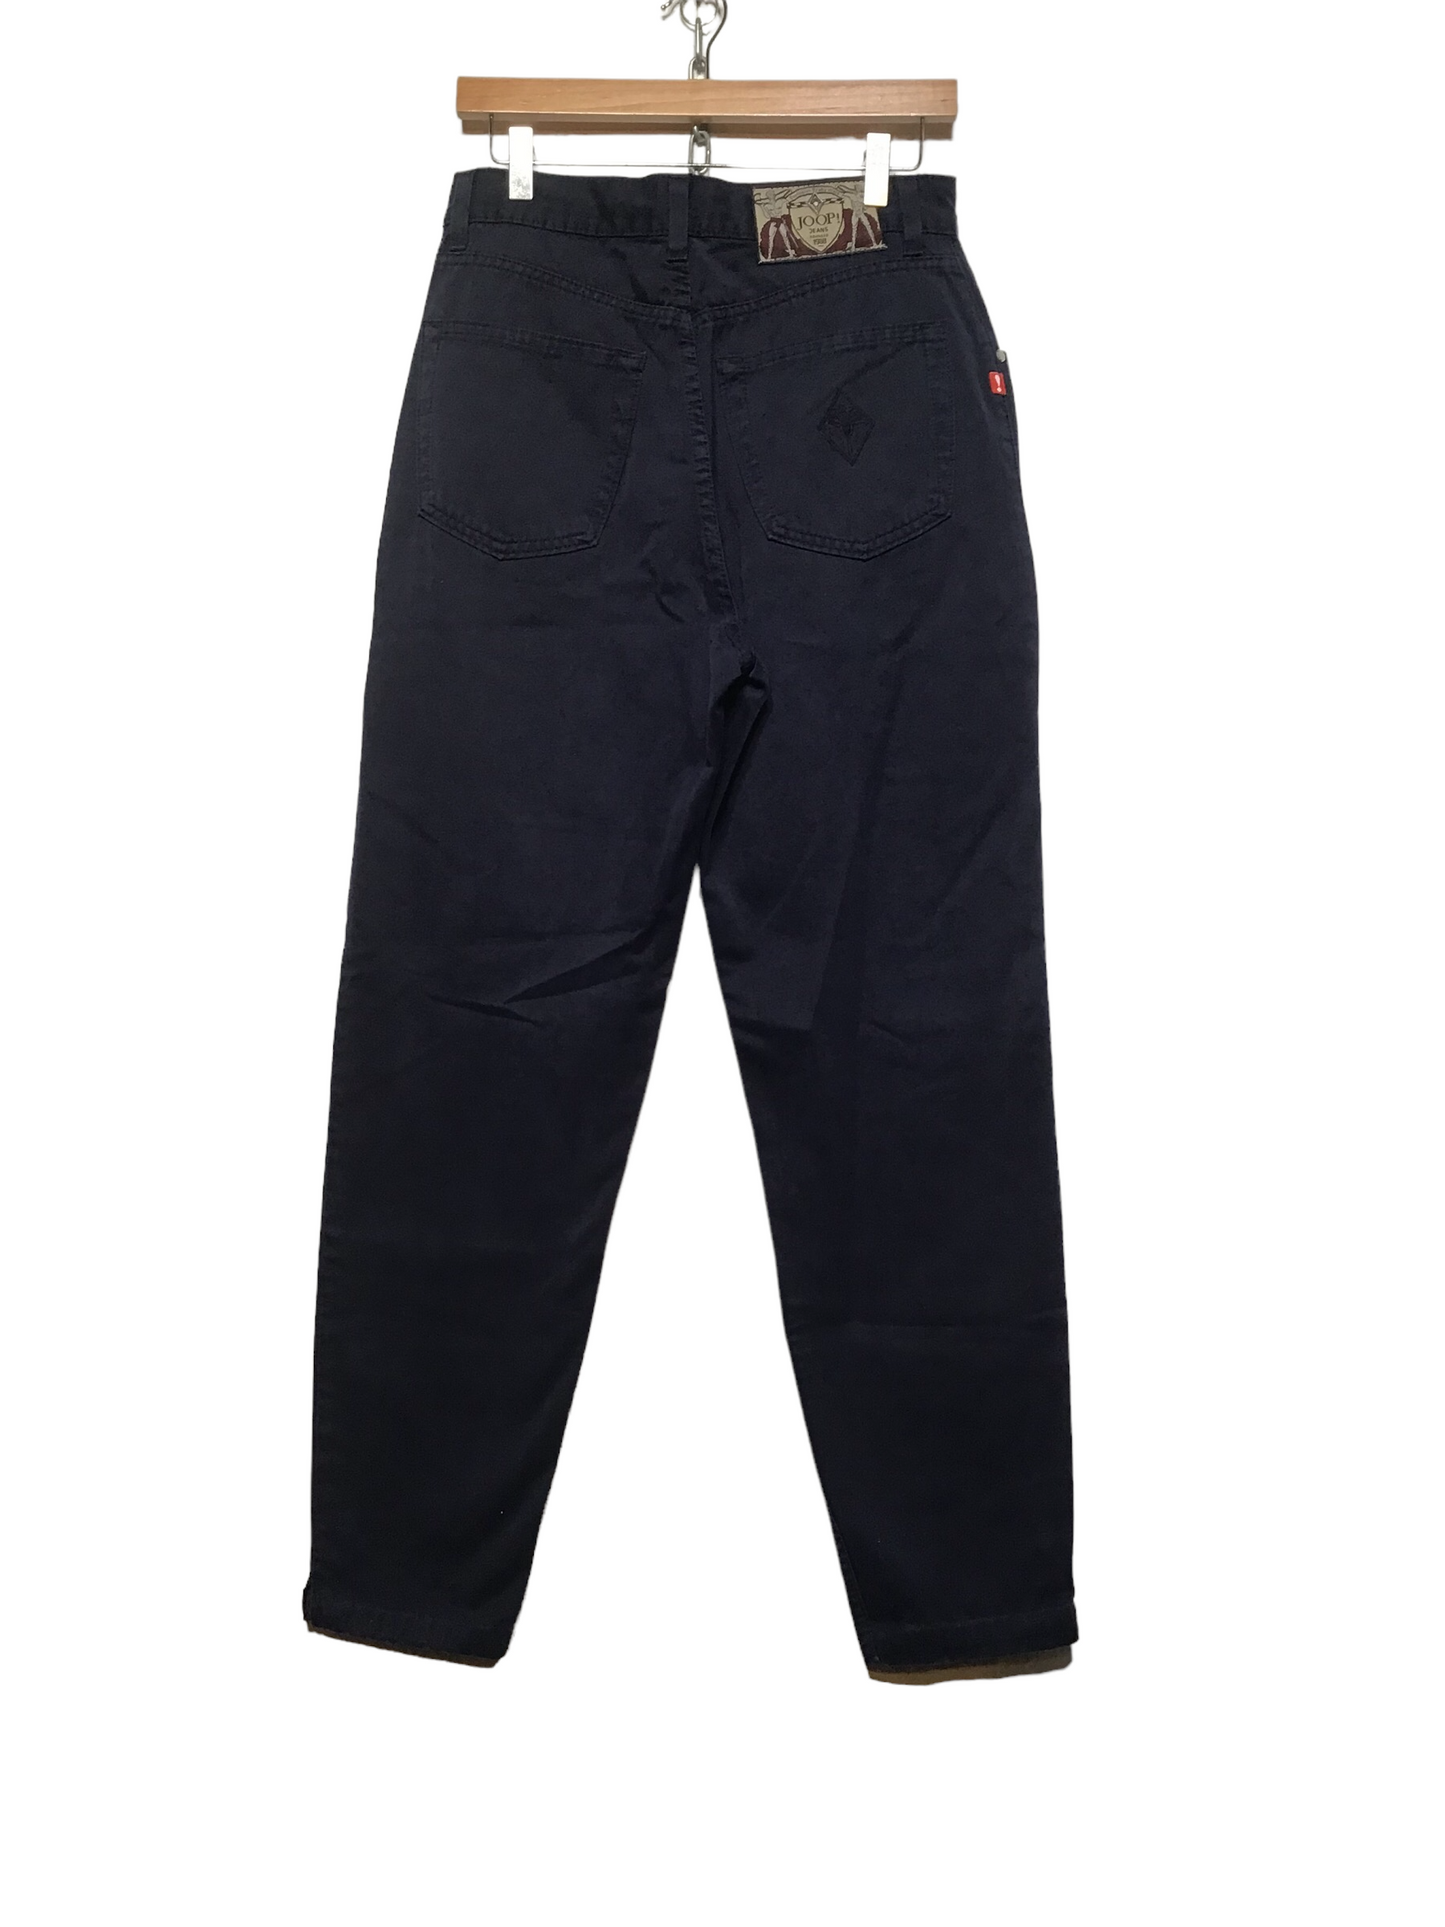 Joop Navy Jeans (30X28)